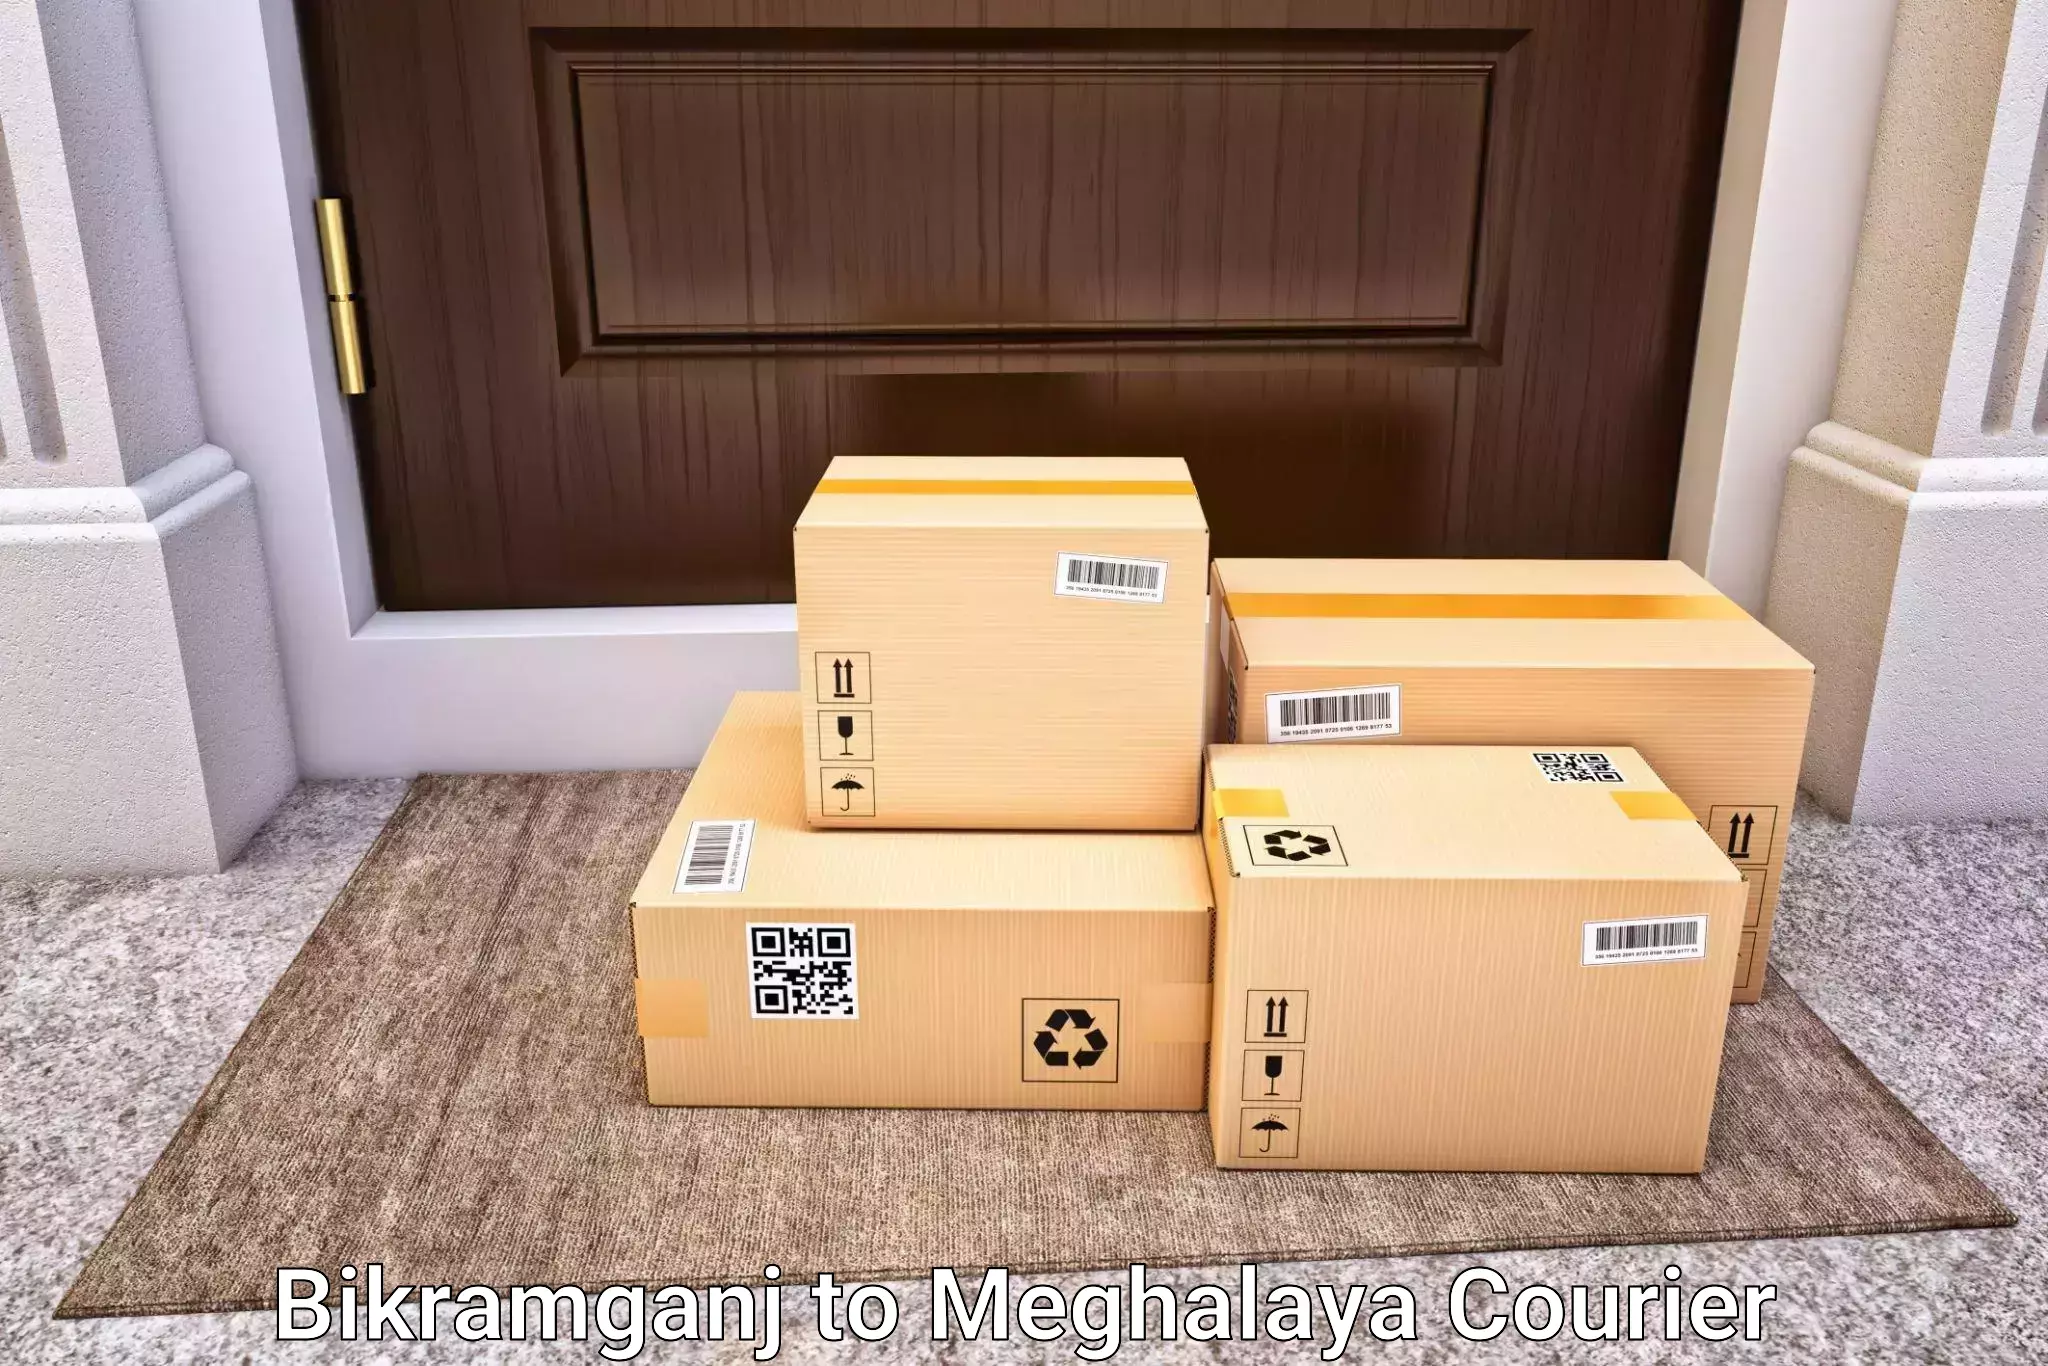 Luggage delivery network Bikramganj to Meghalaya